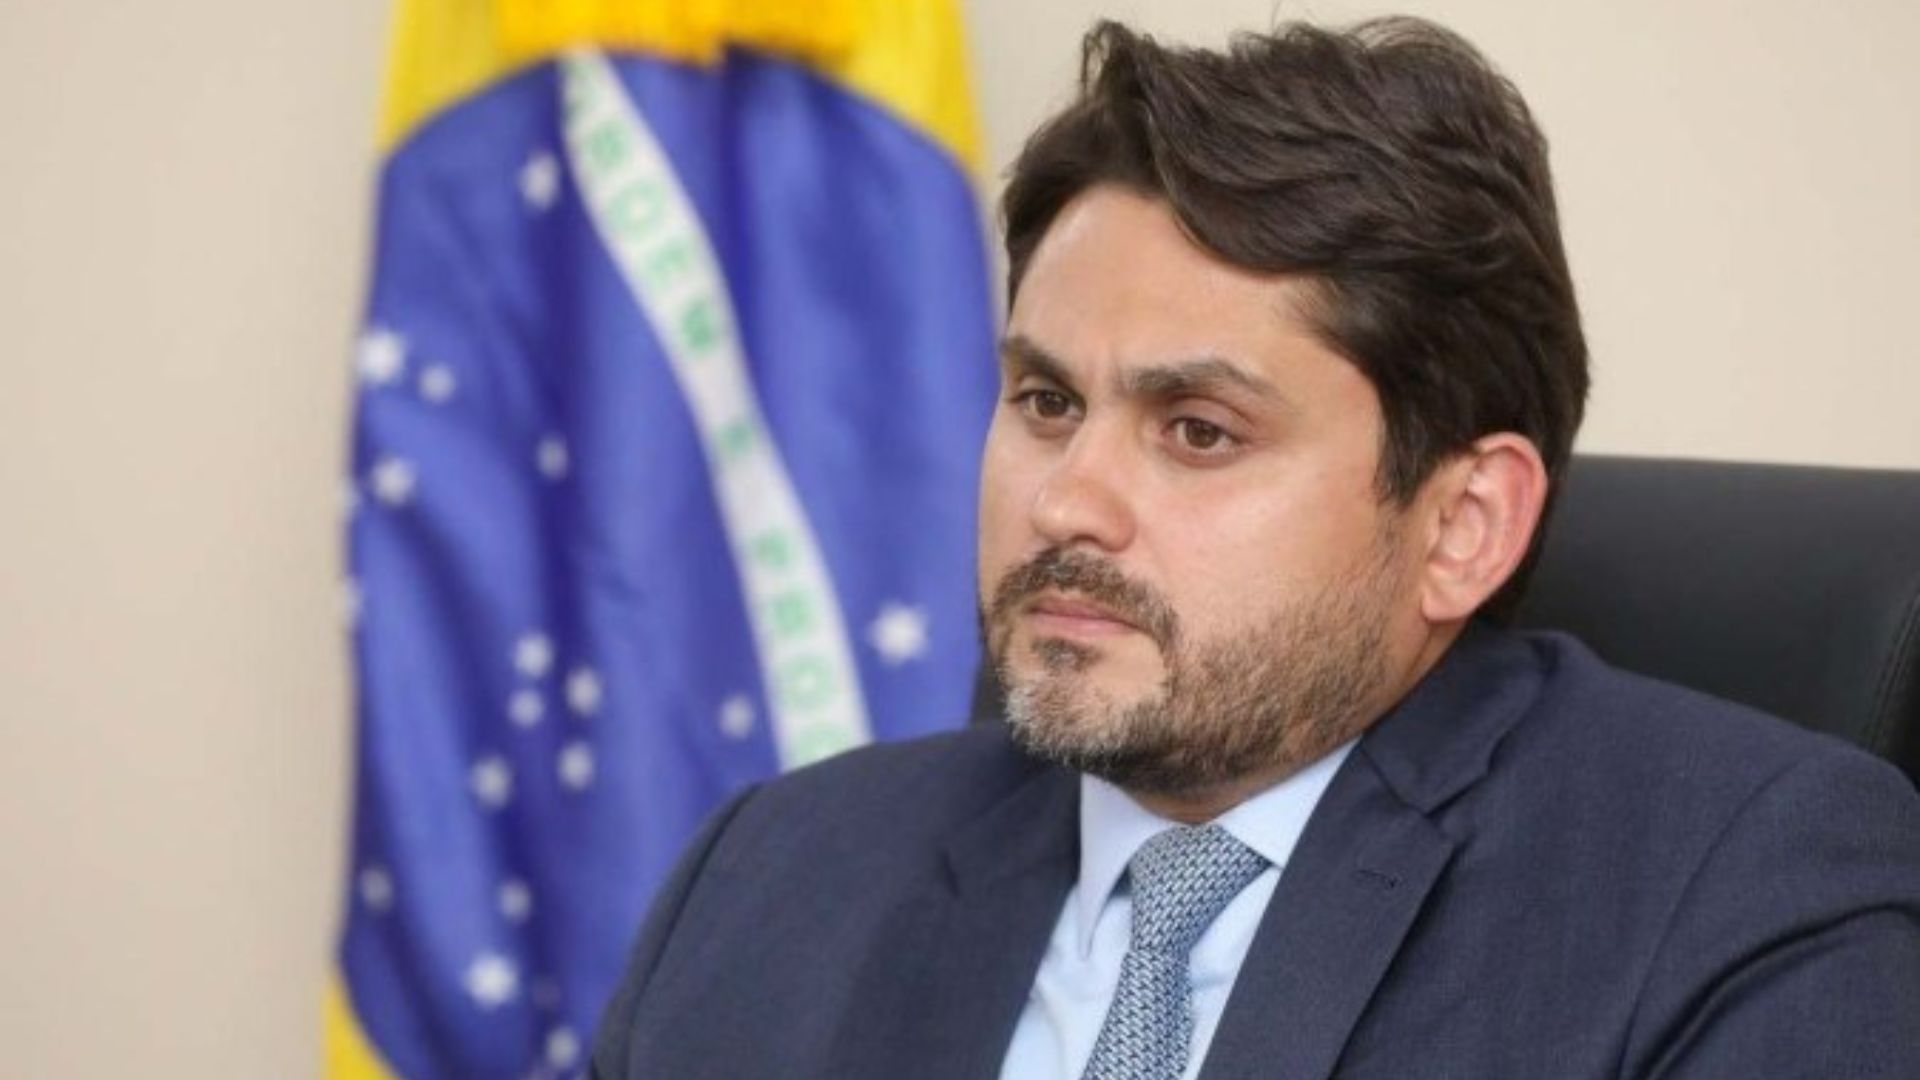 PF indicia JUCELINO FILHO, ministro das Comunicações, por crimes de CORRUPÇÃO, LAVAGEM DE DINHEIRO e organização criminosa